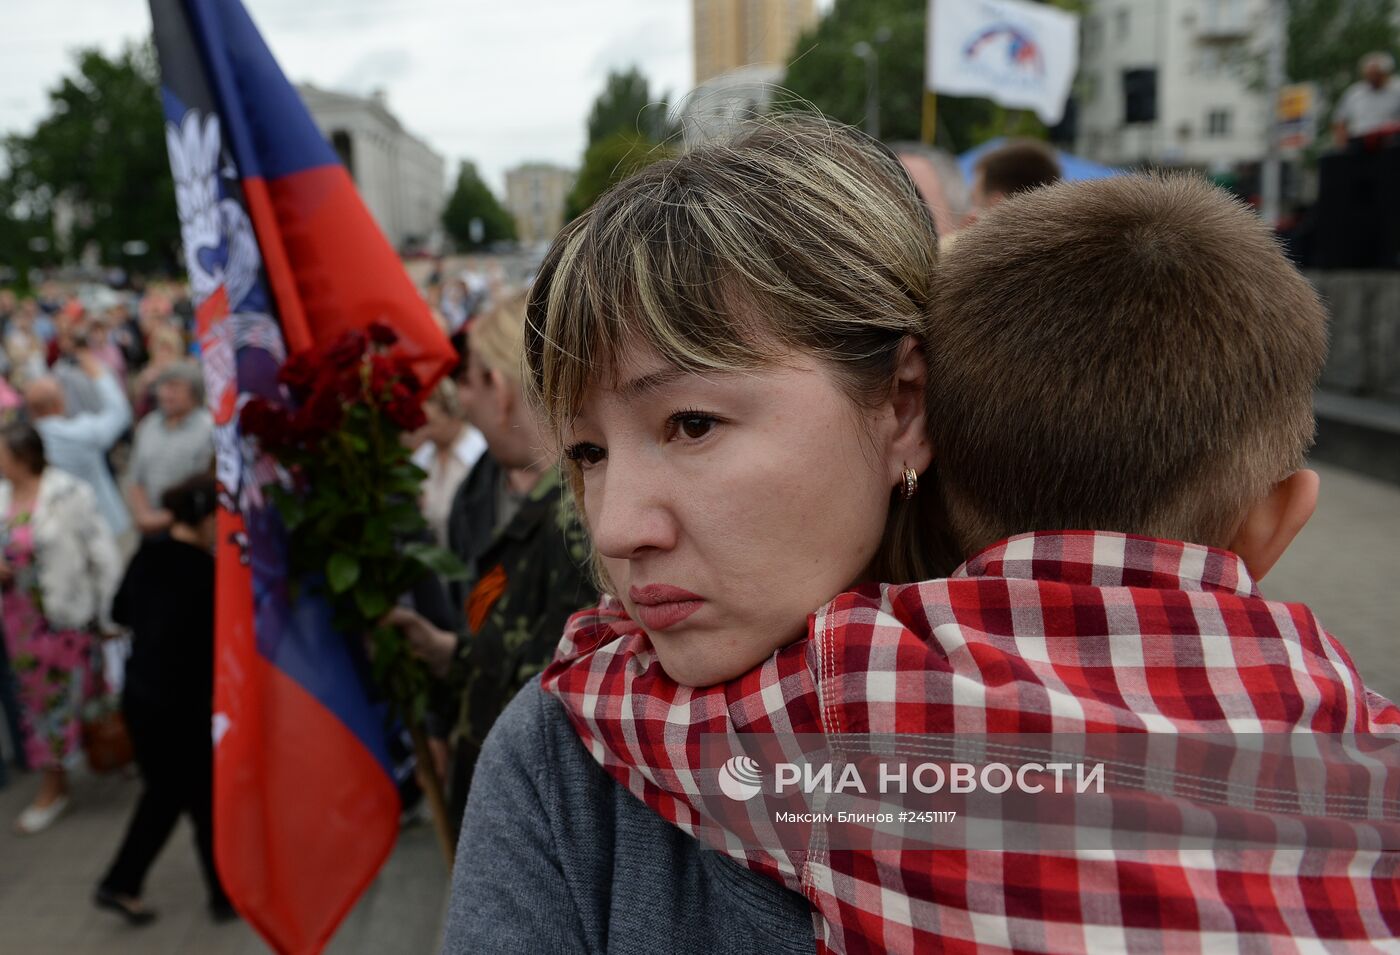 Бойцы народного ополчения Донбасса приняли воинскую присягу в Донецке